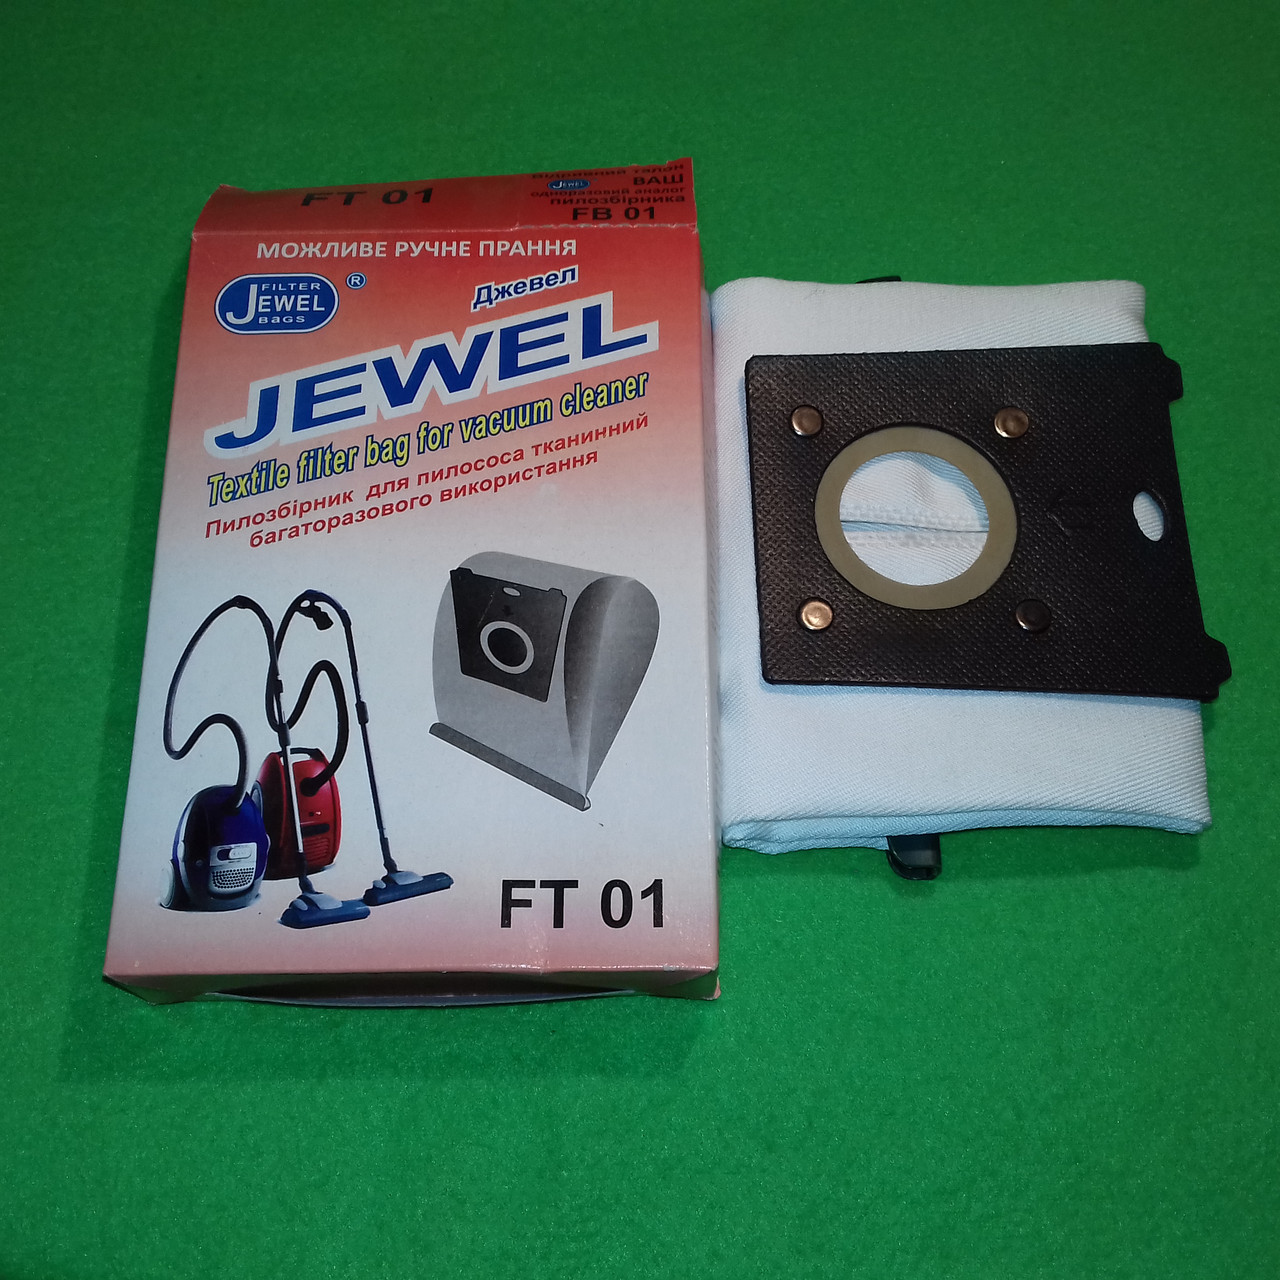 Багаторазовий тканинний мішок Jewell FT-01 для пилососів Bosch, Siemens тощо